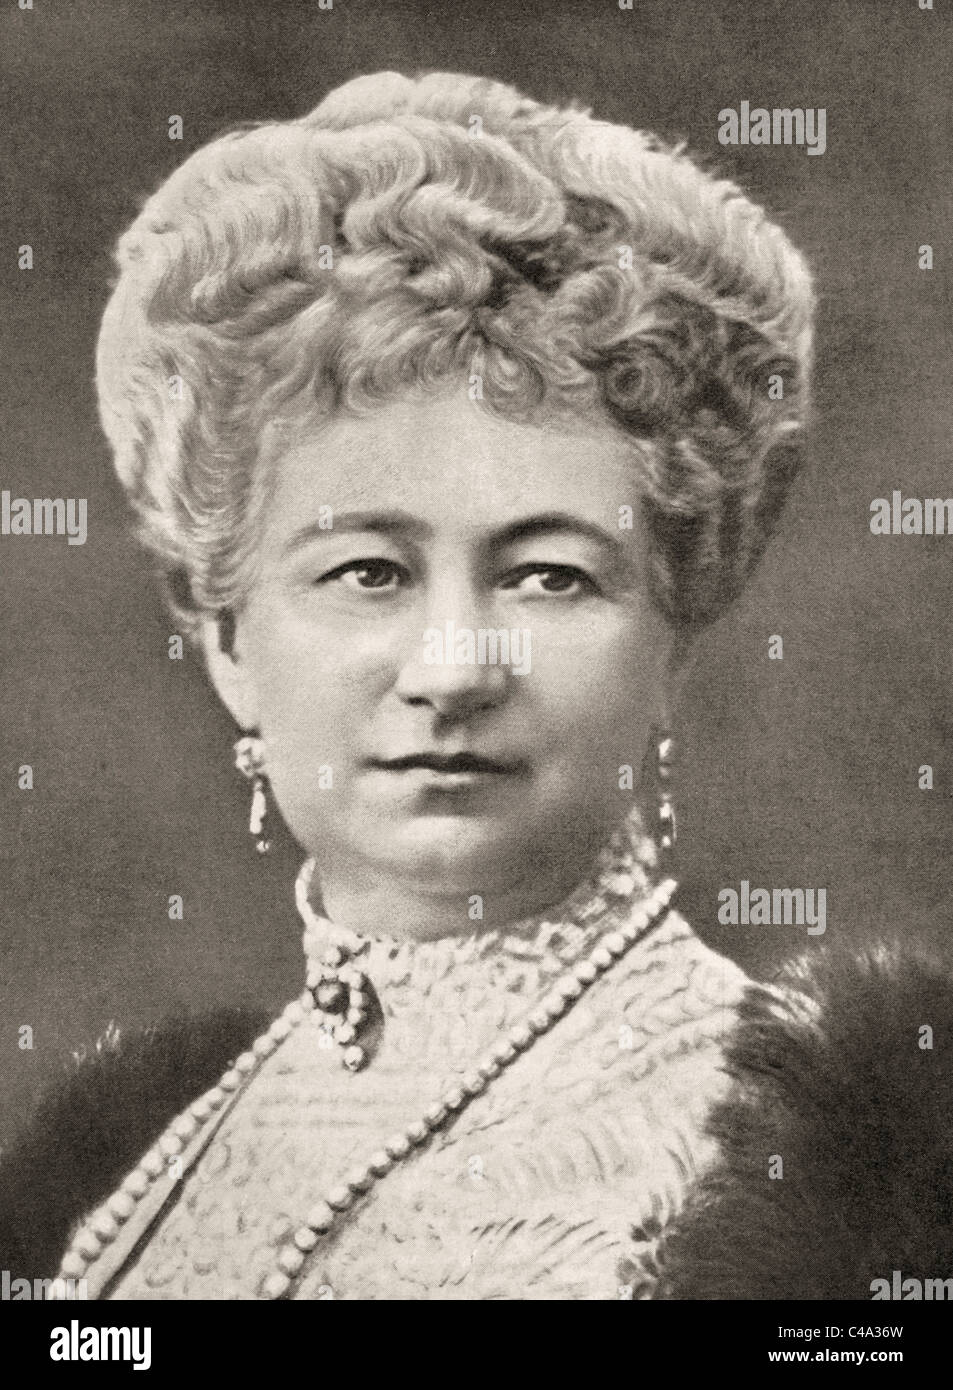 Augusta Victoria von Schleswig-Holstein, 1858 – 1921. Letzte deutsche Kaiserin und Königin von Preußen. Stockfoto